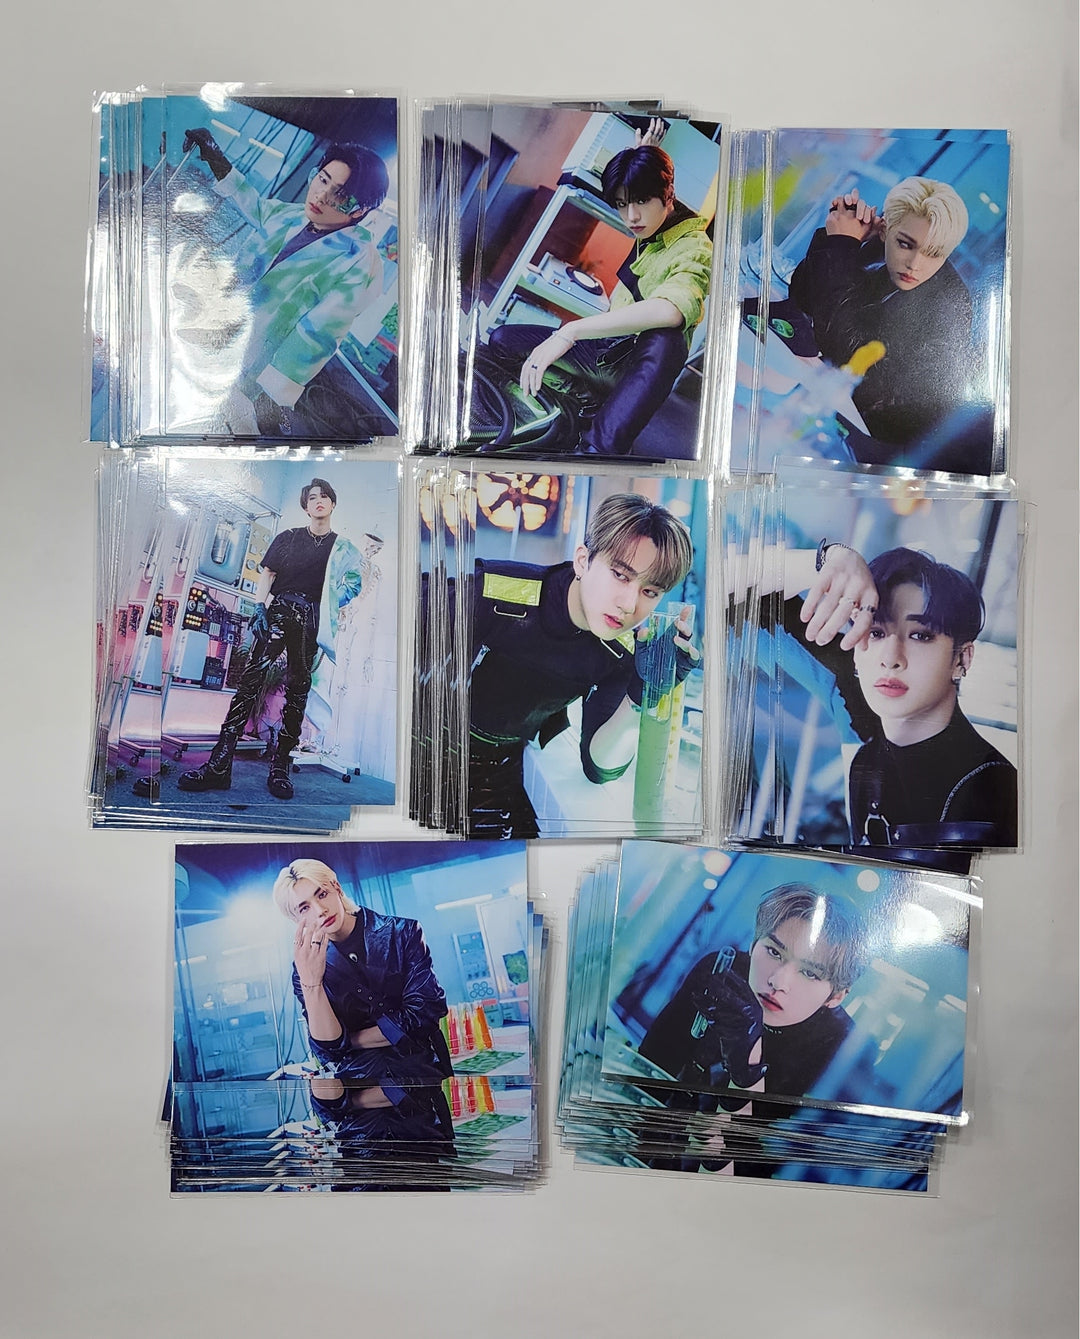 Stray Kids "MANIAC" SEOUL Special - SKZ Merch Special Gift Postcard